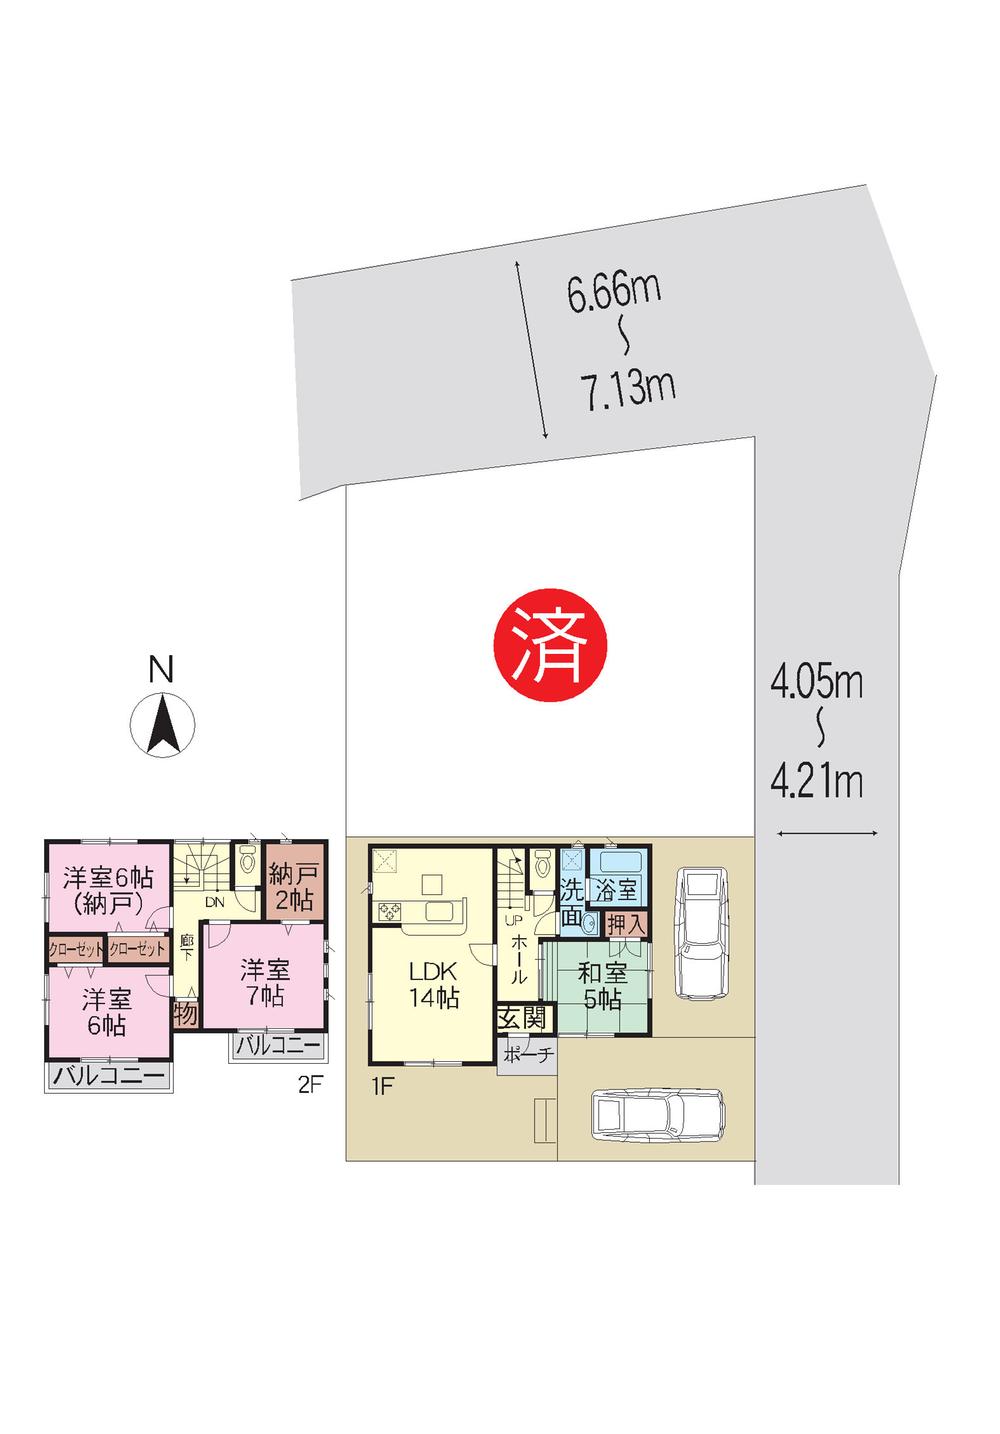 Compartment figure. 16.8 million yen, 4LDK, Land area 114.38 sq m , Building area 93.55 sq m car park two